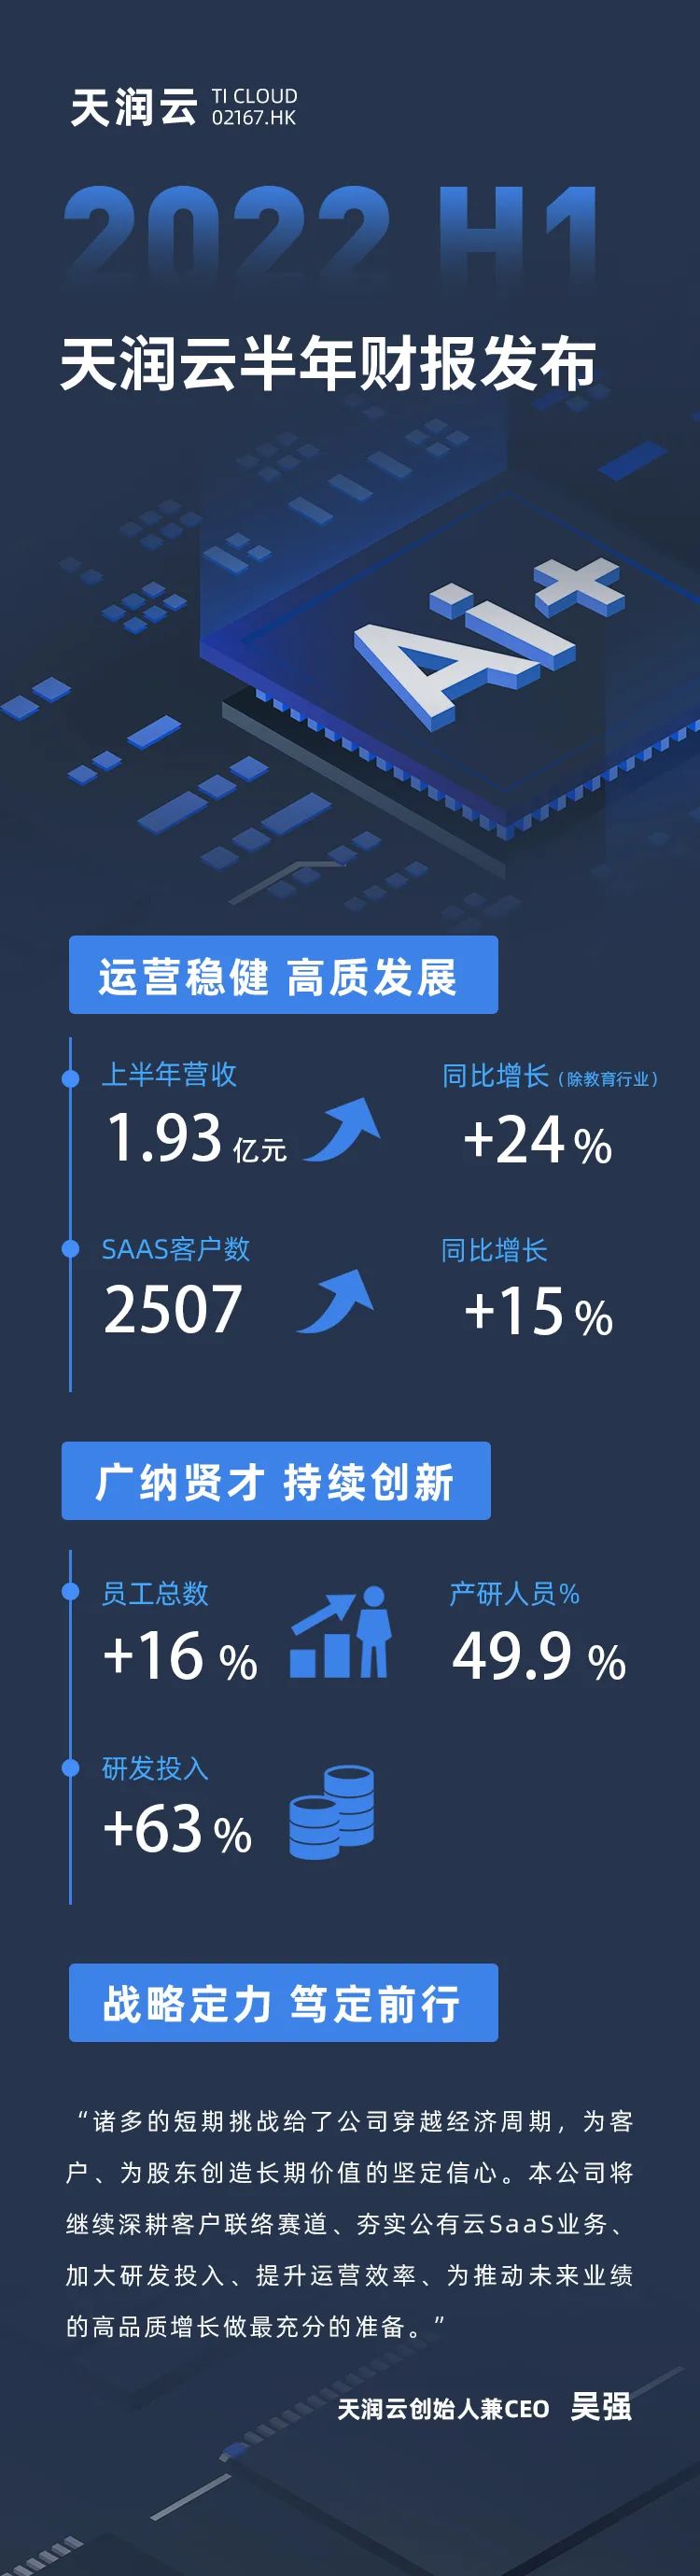 天润云发布2022年上半年财报配图